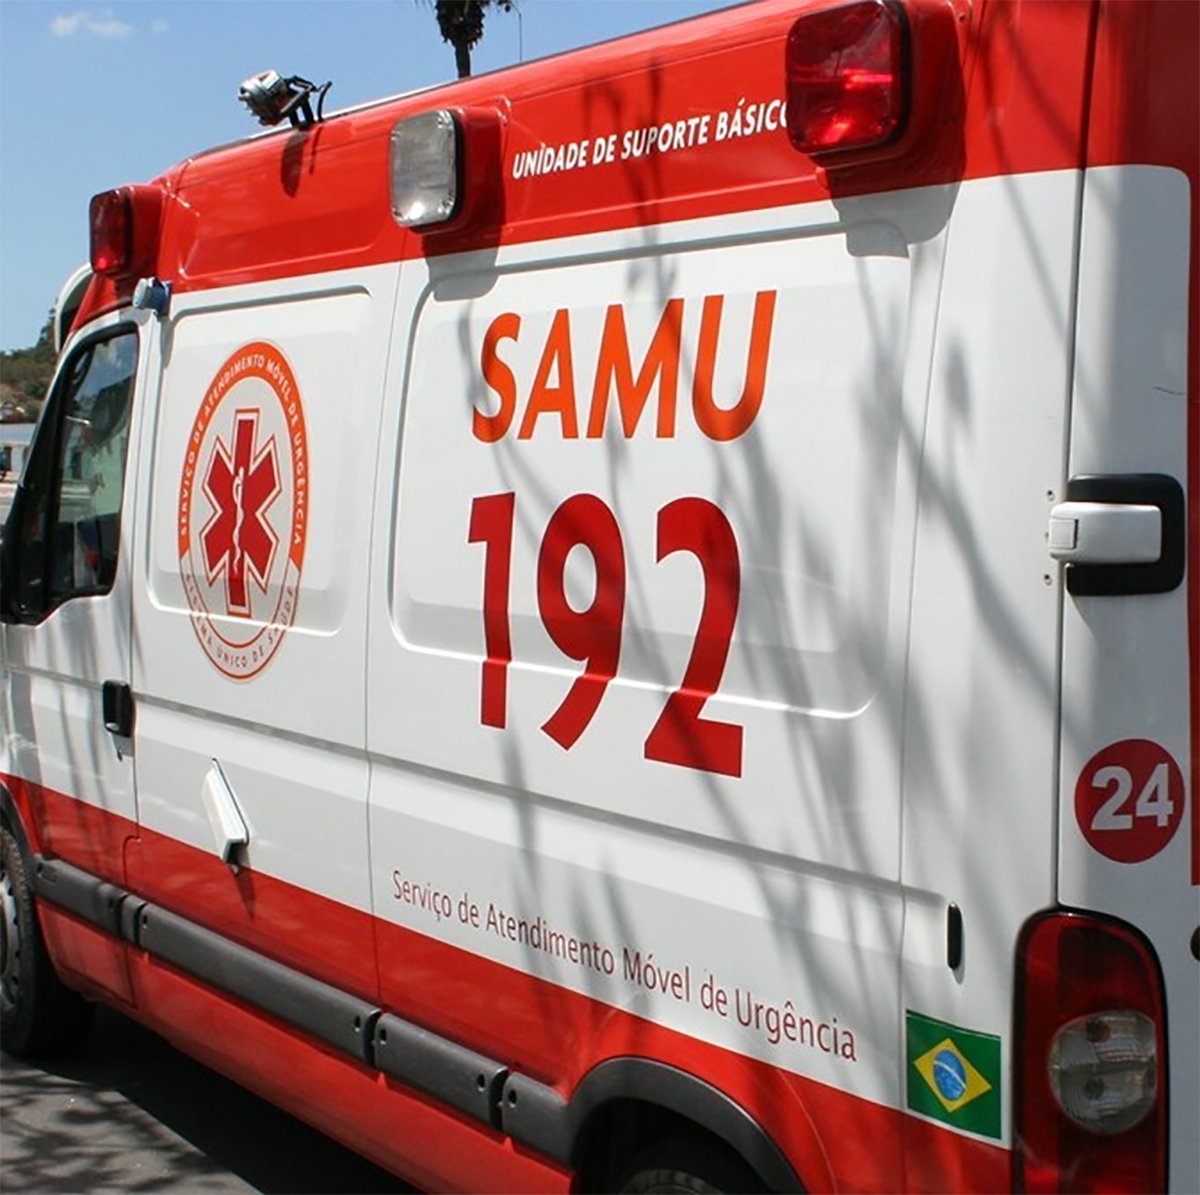 Irmão da vítima ouviu os disparos e chamou o Serviço de Atendimento Móvel de Urgência (Samu), mas quando a equipe chegou a vítima já estava sem vida